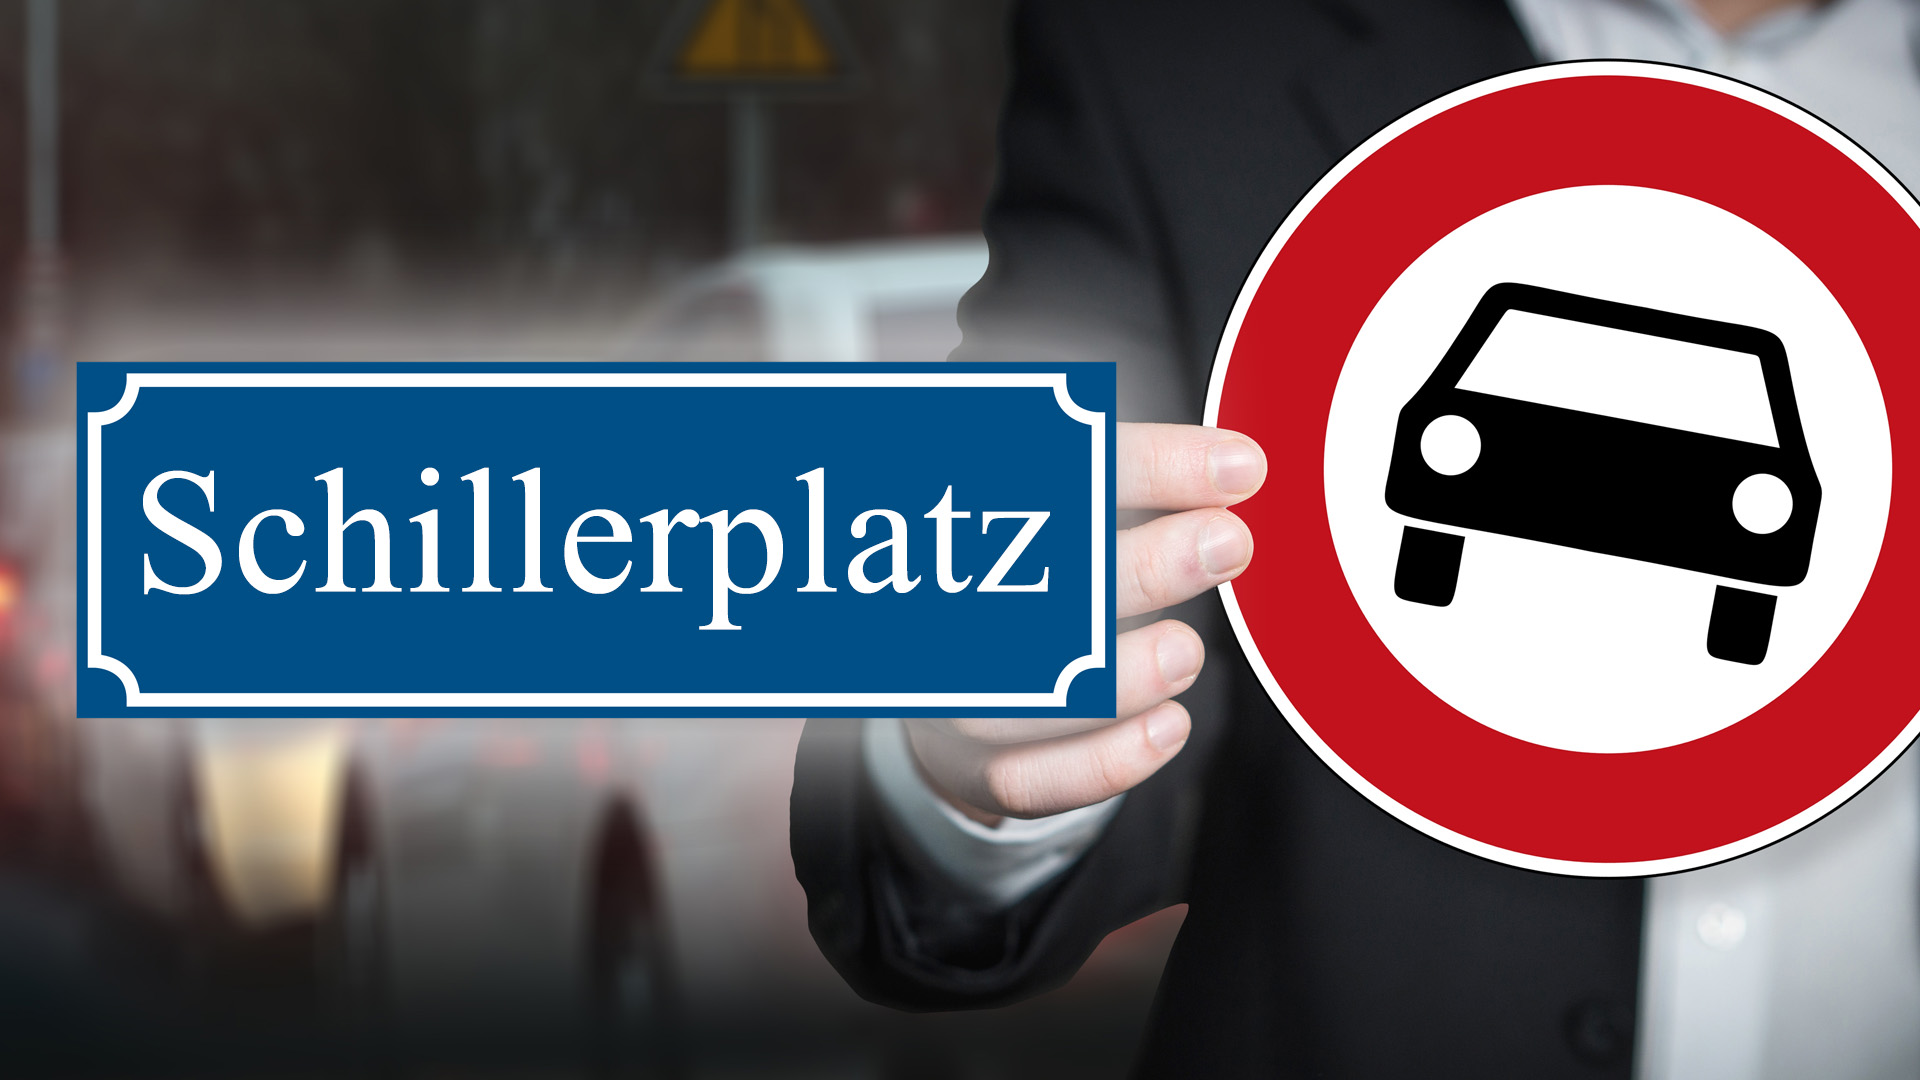 Schillerplatz Offenbach autofrei Verkehrsversuch beginnt